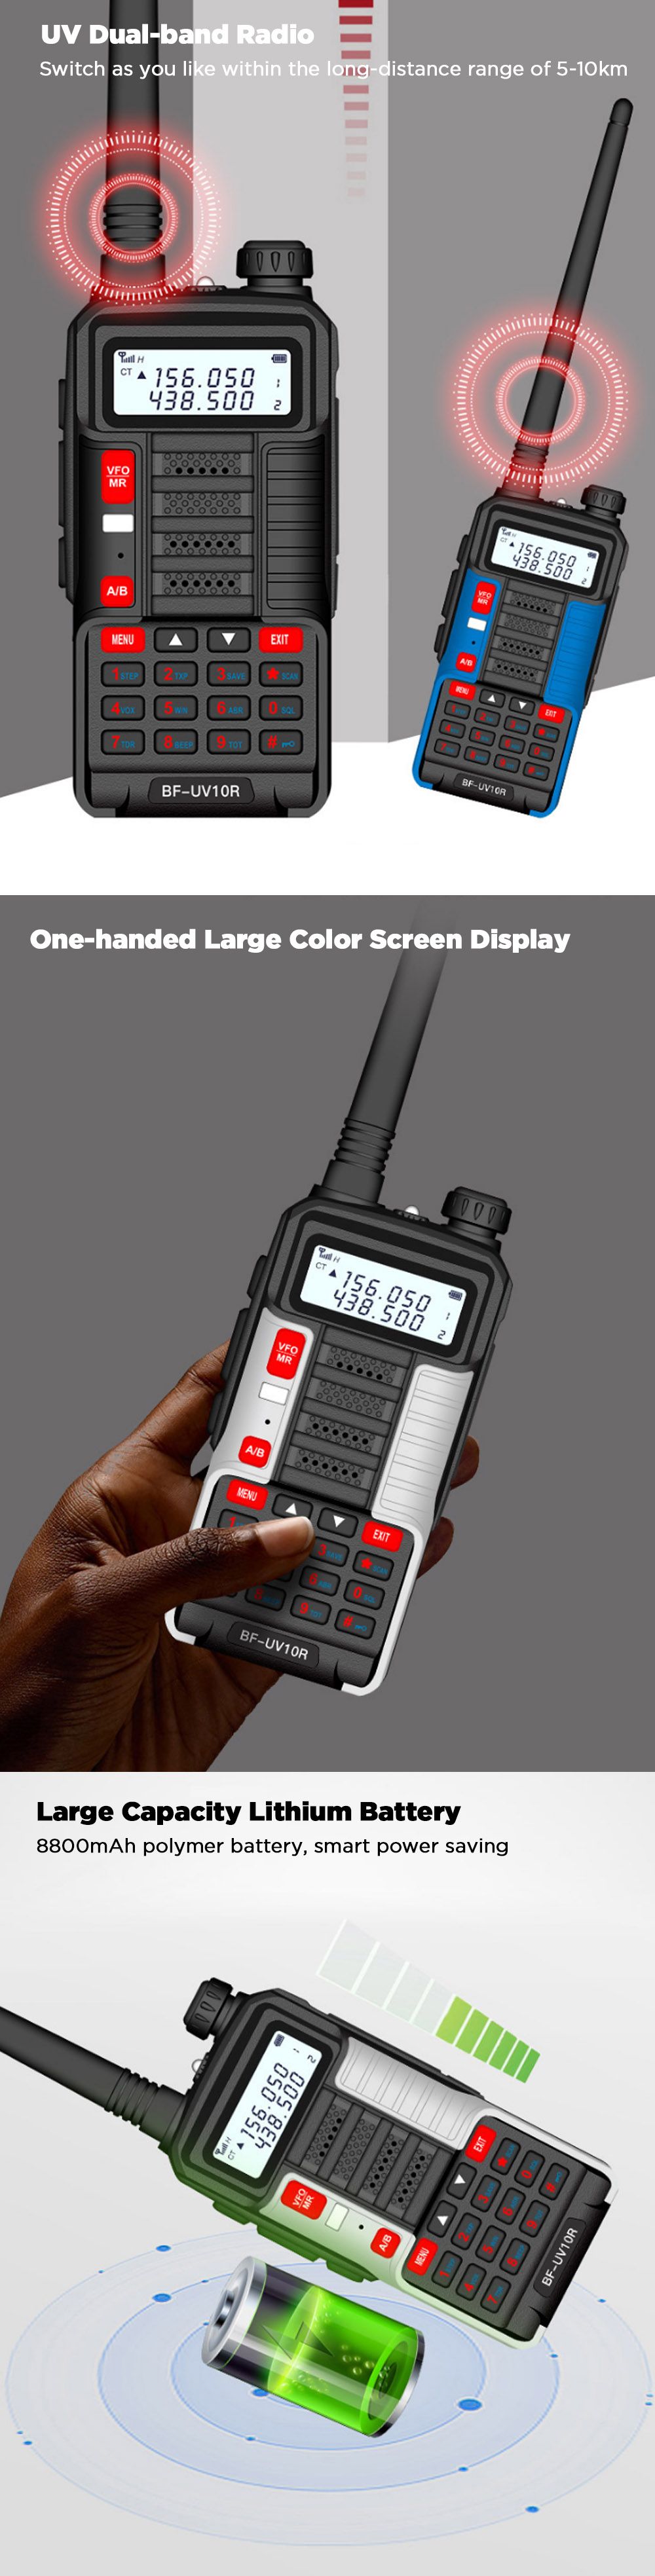 BAOFENG-BF-UV10R-Plus-10W-5800mAh-UV-Dual-Band-Two-way-Handheld-Radio-Black-Walkie-Talkie-128-Channe-1753474